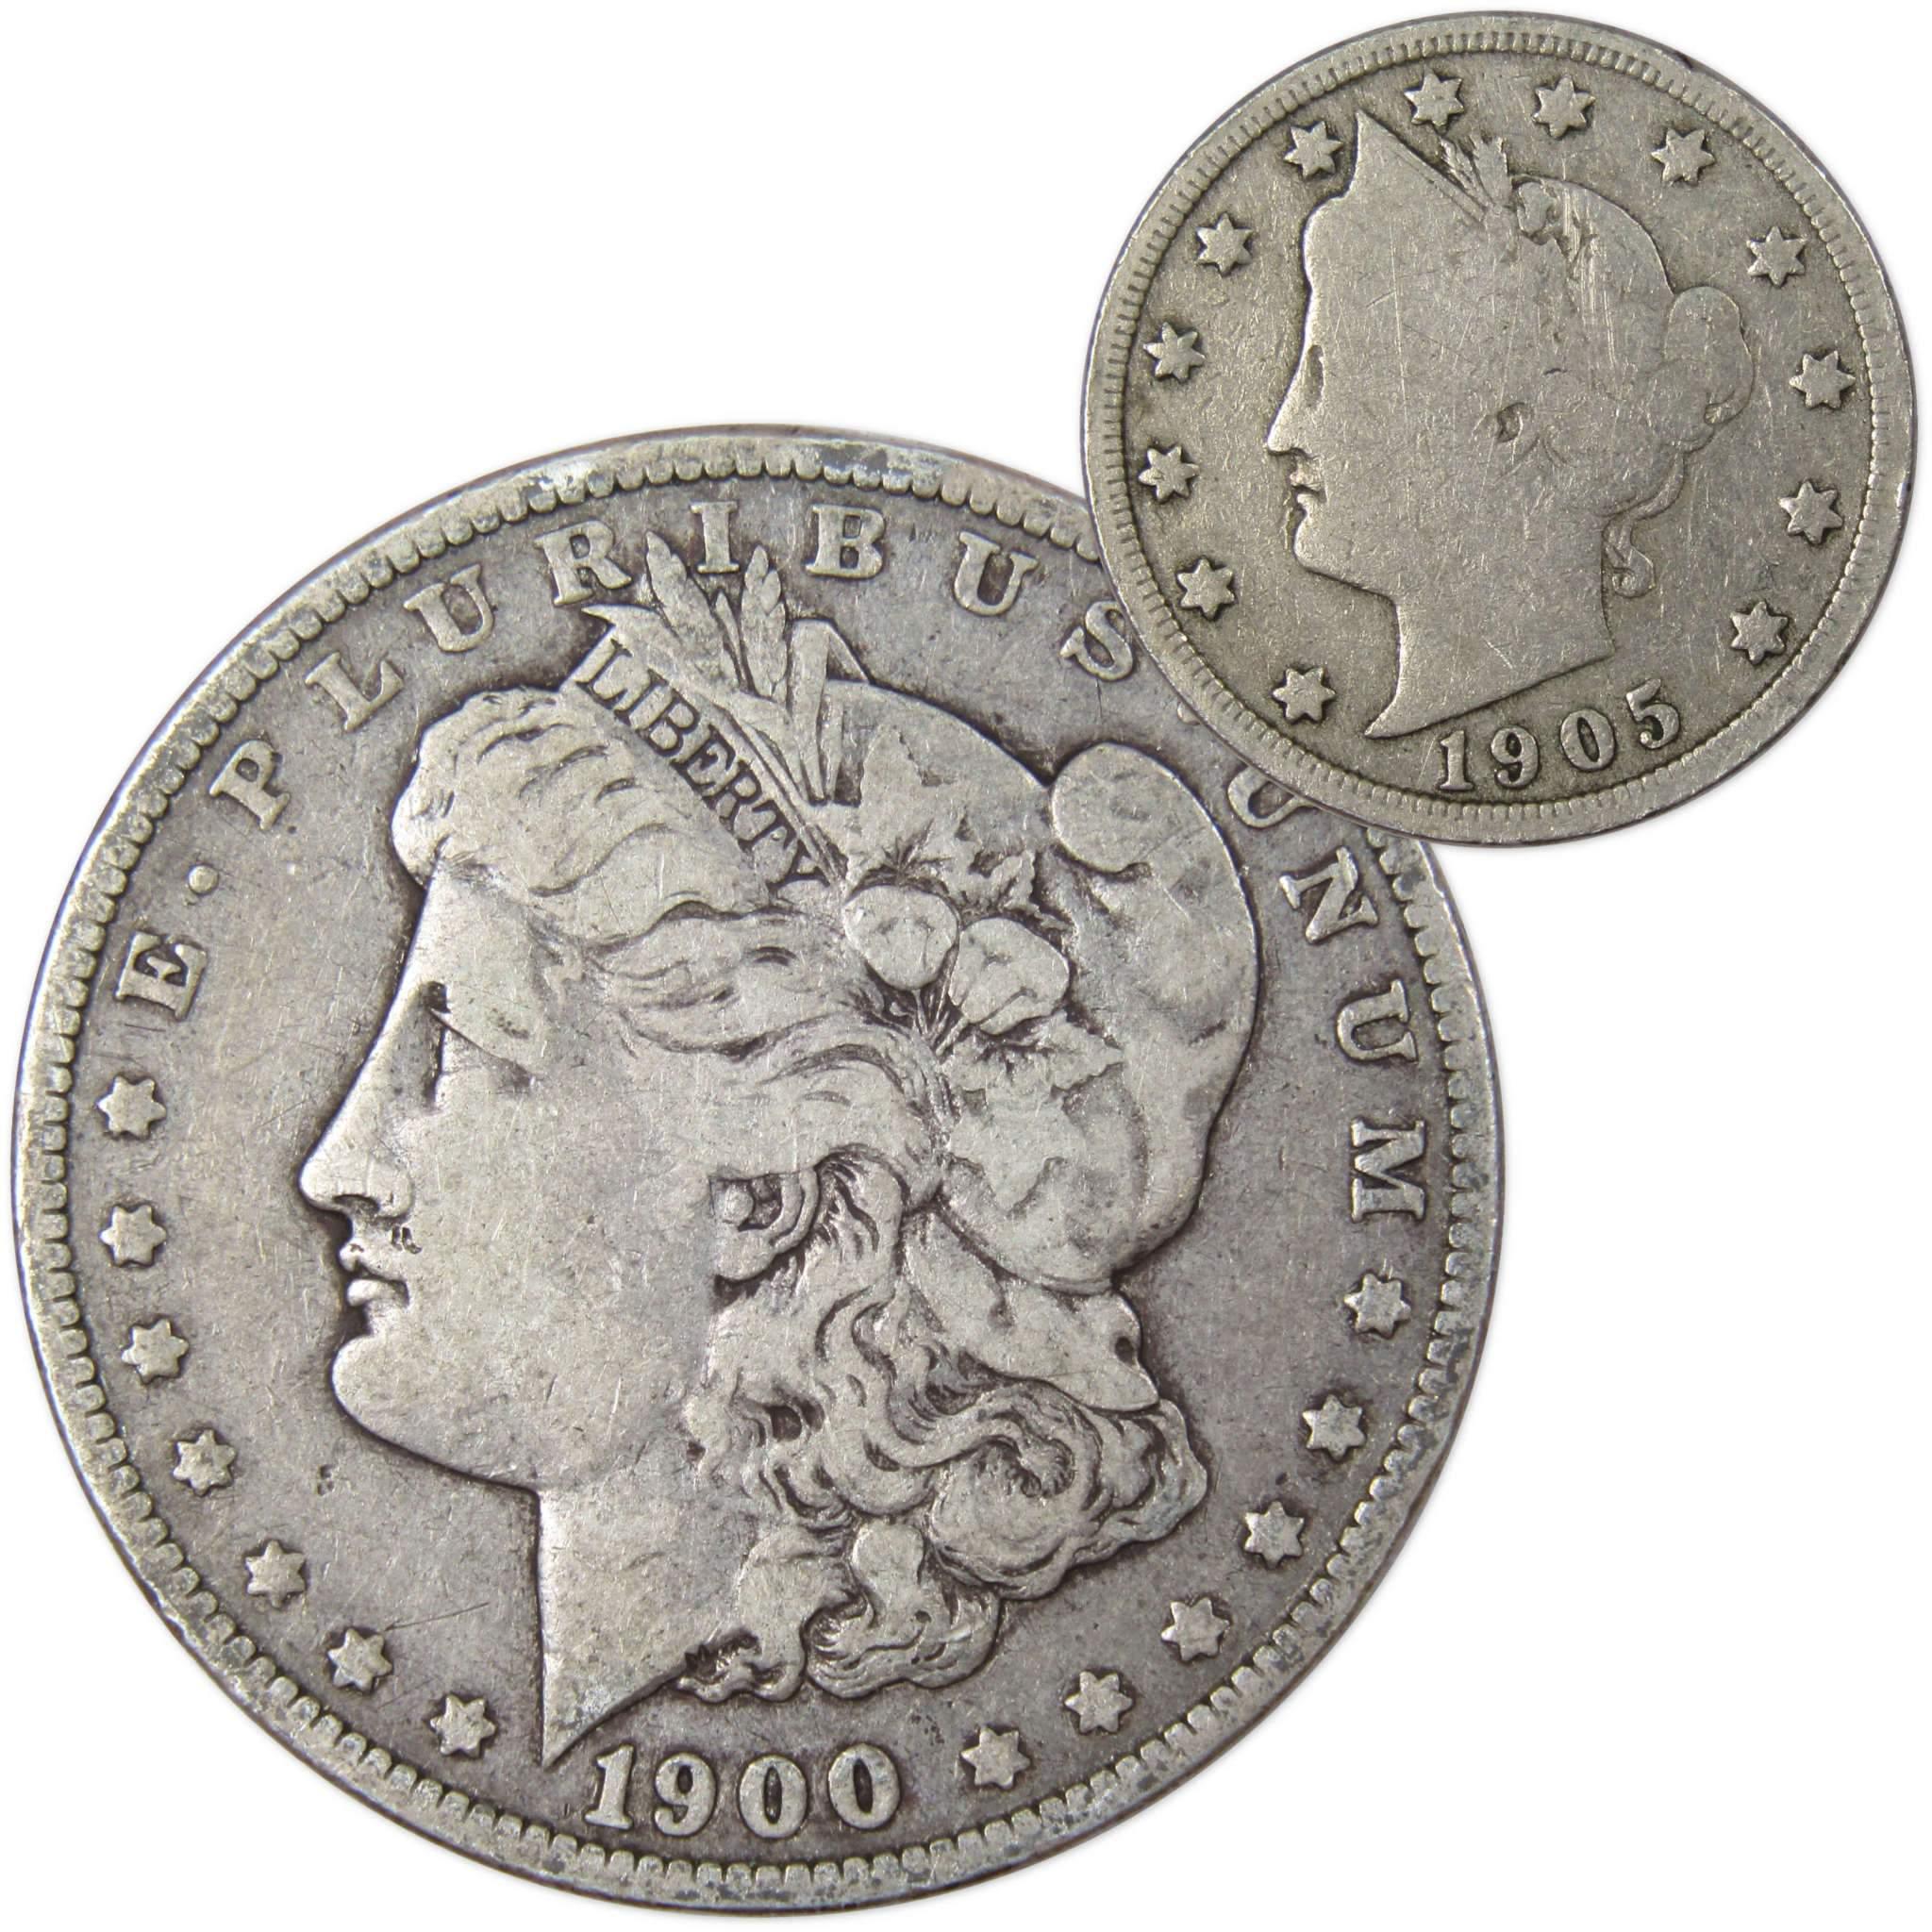 1900 Morgan Dollar VF Very Fine 90% Silver Coin with 1905 Liberty Nickel G Good - Morgan coin - Morgan silver dollar - Morgan silver dollar for sale - Profile Coins &amp; Collectibles